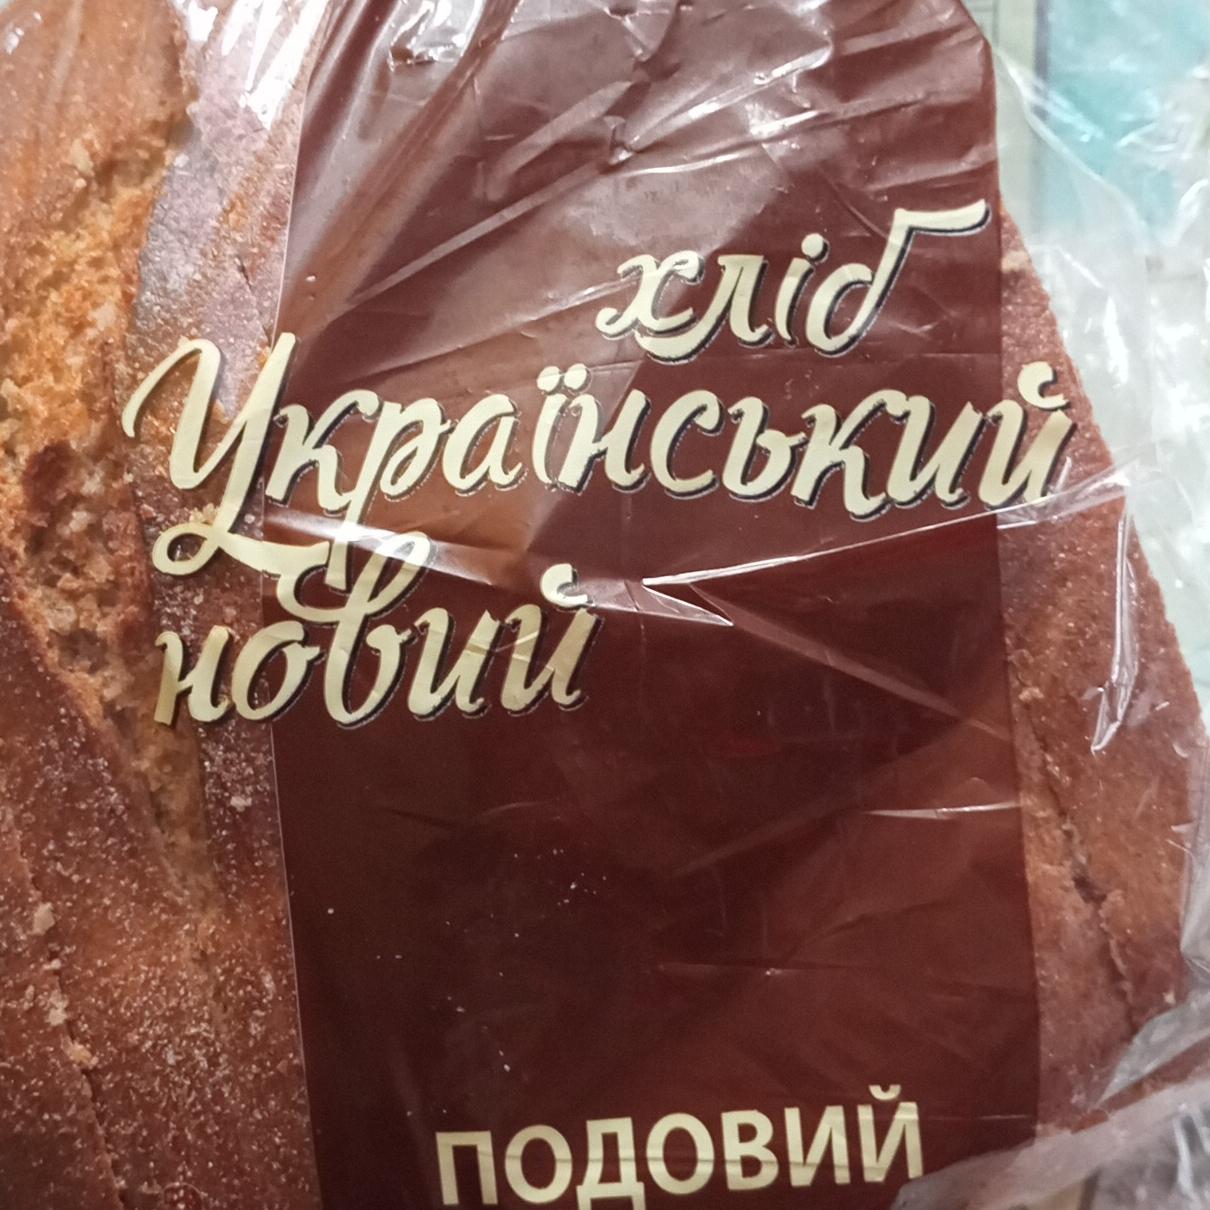 Фото - Хліб Український новий Переяслав хліб